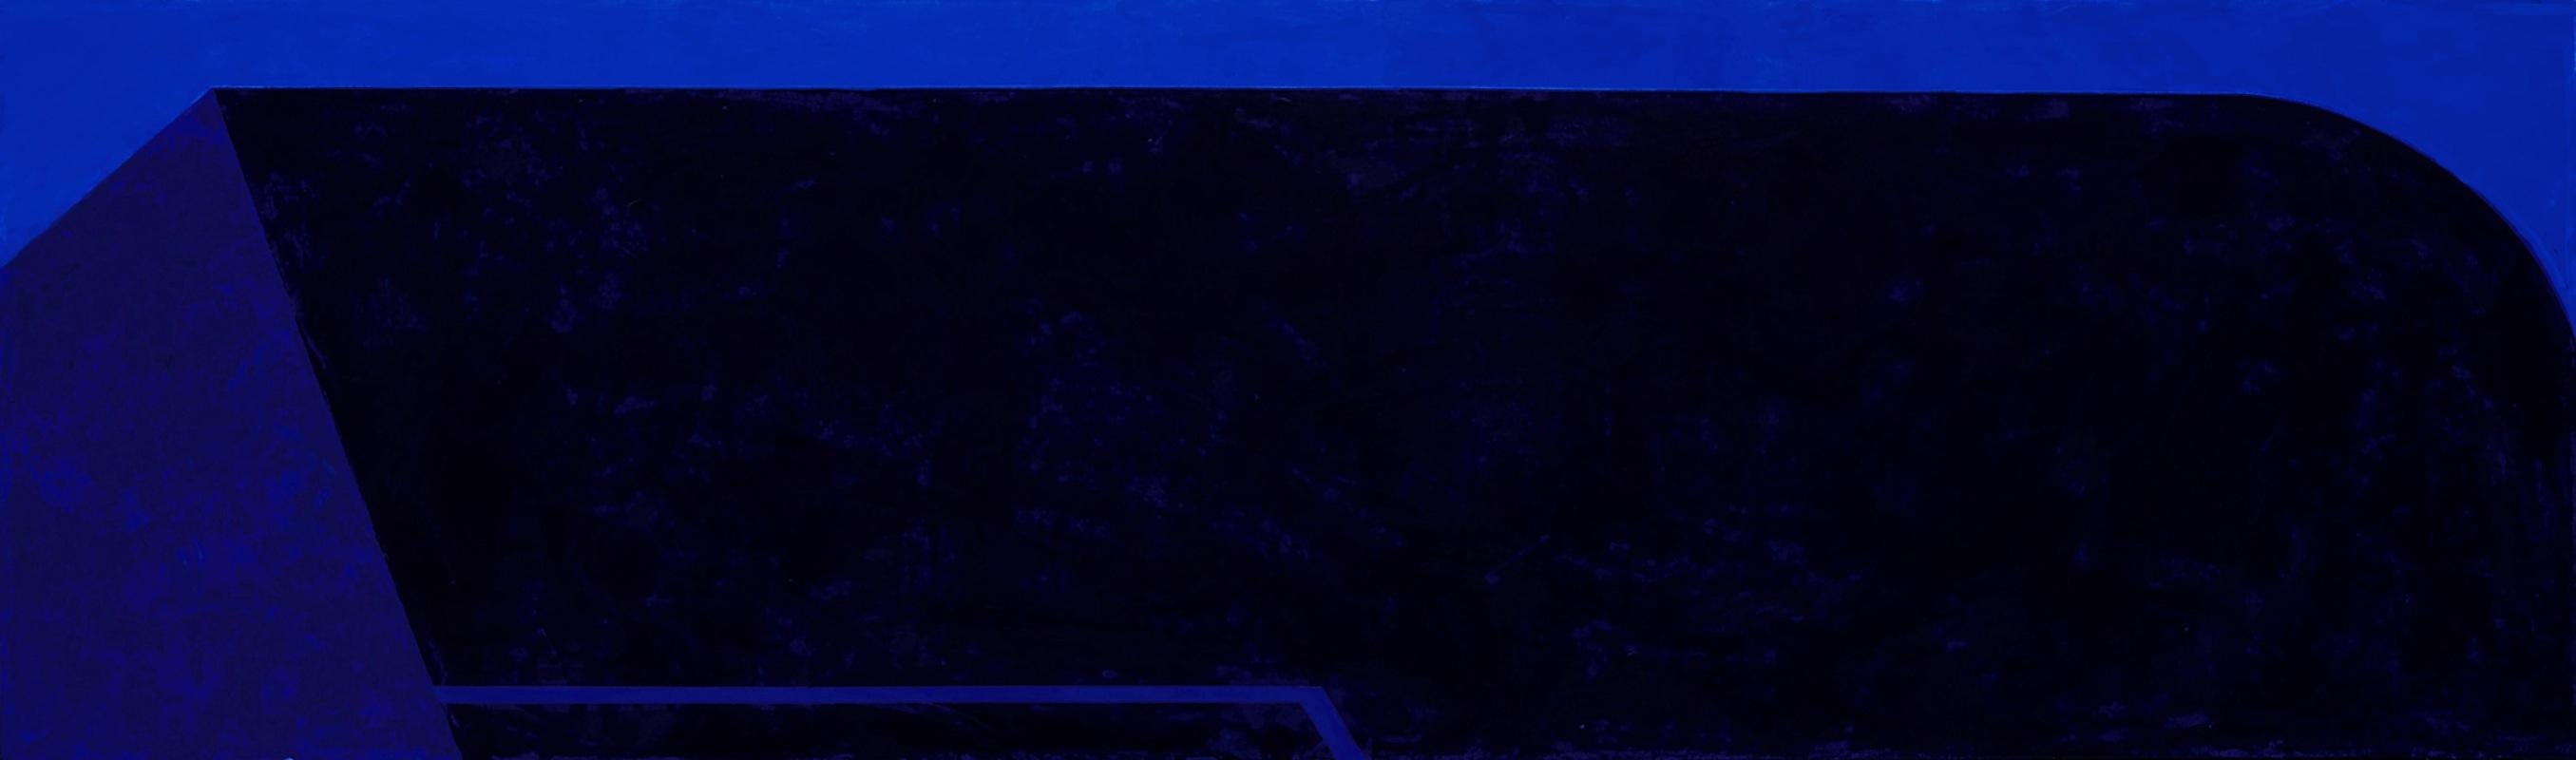 Macyn Bolt, O to C II, 2018, Minimalist, acrylic on canvas, 16 x 20 x 2 inches For Sale 5